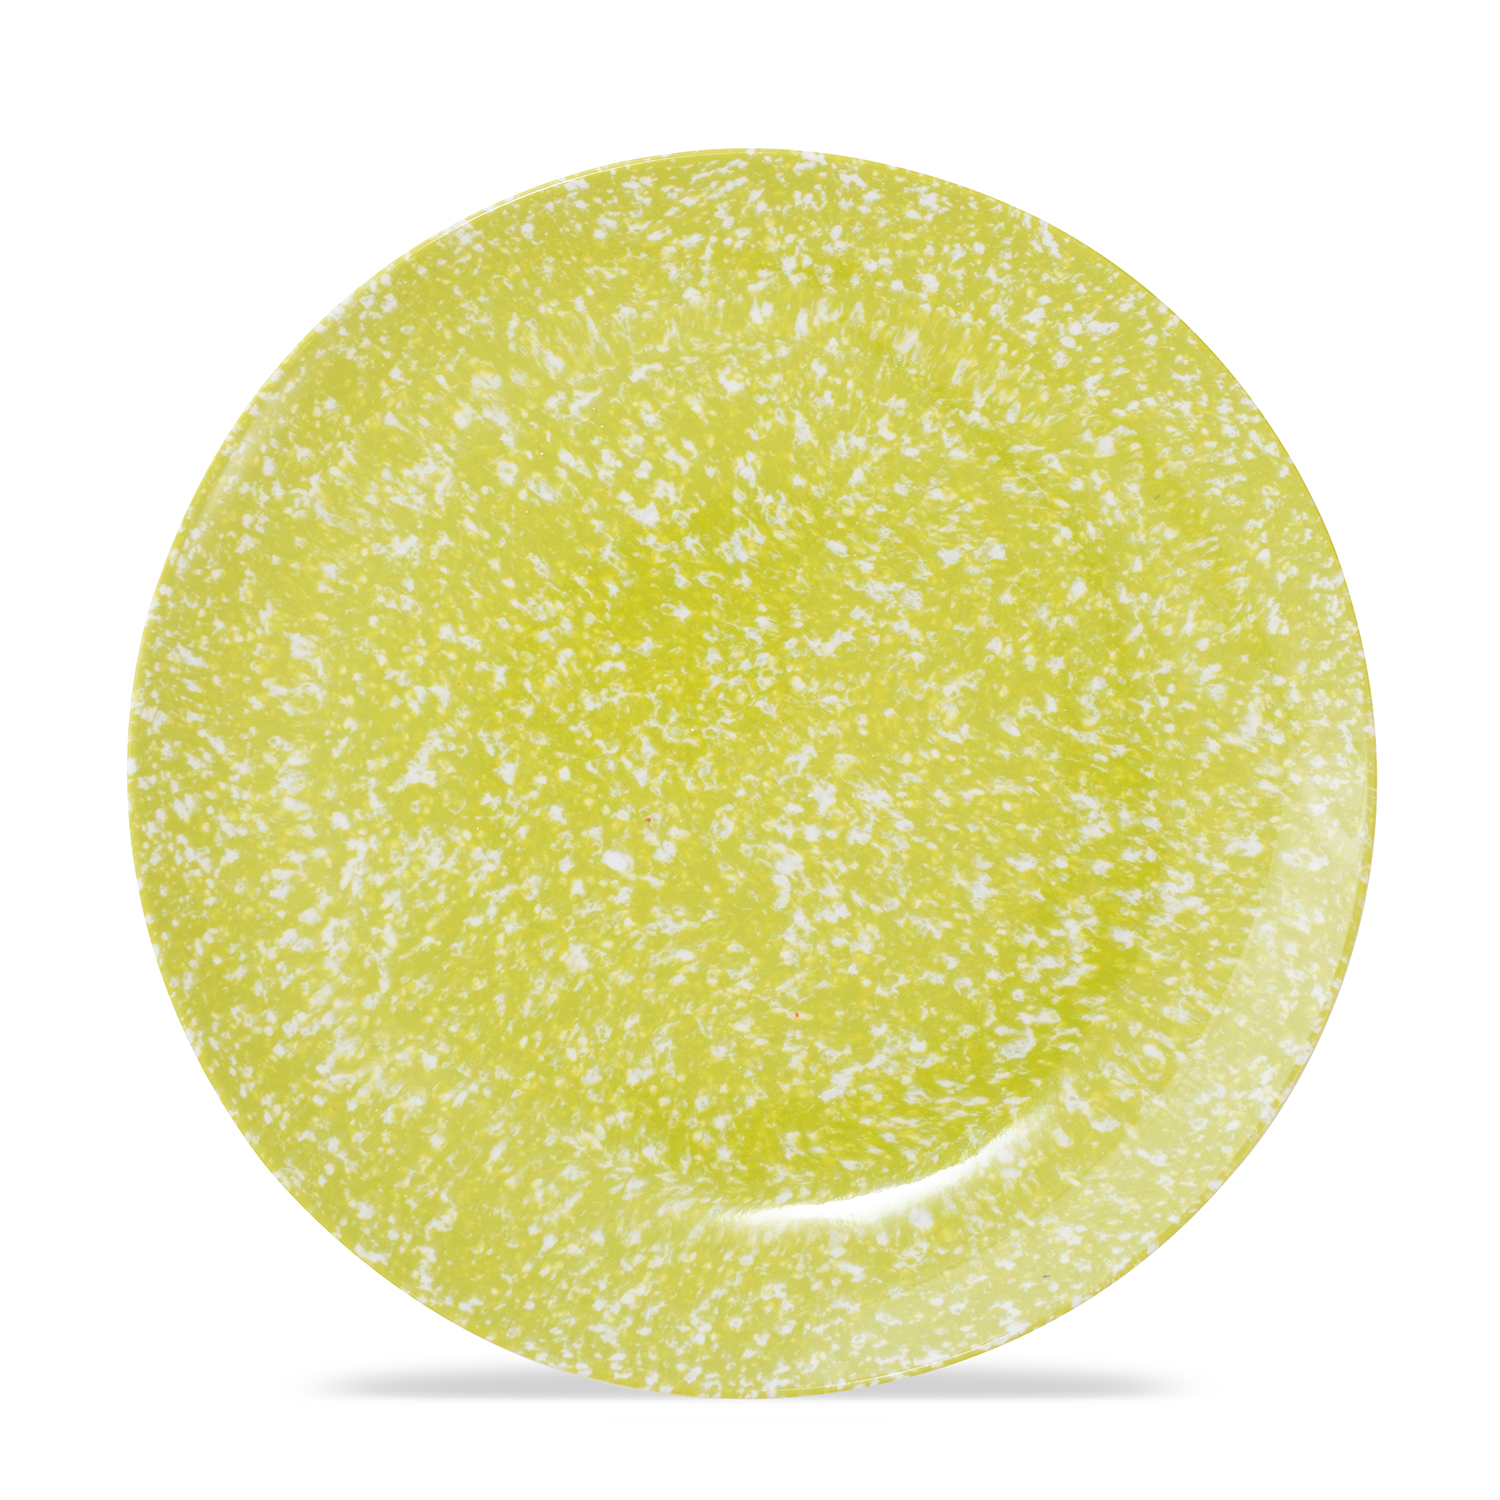 Cora - Melamine 10" Plate - Summer Mottled - Citrus Green